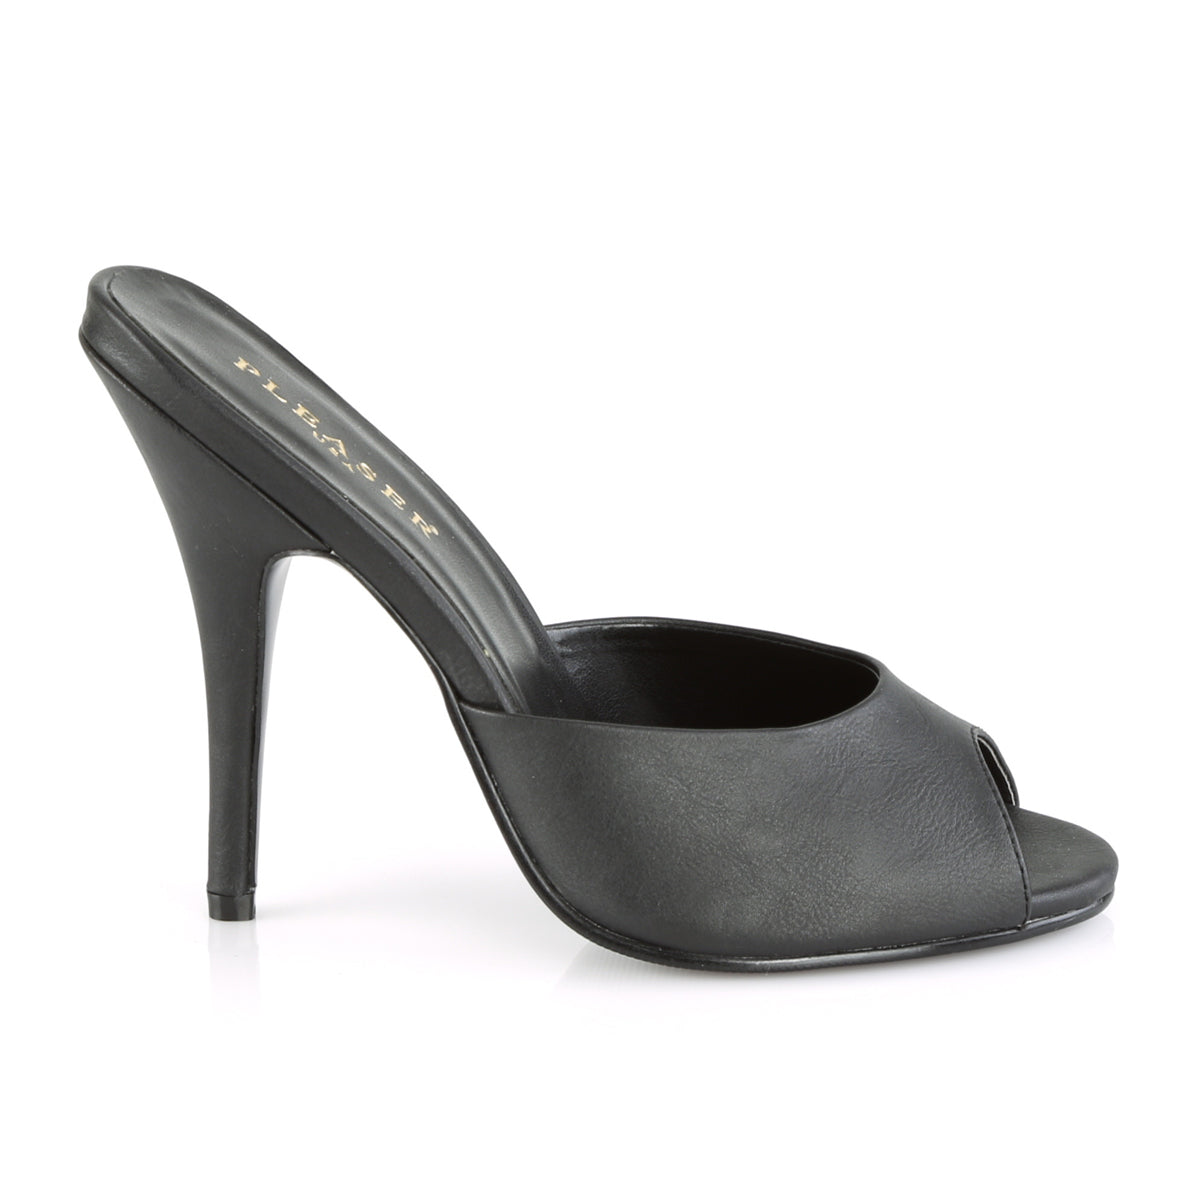 SEDUCE-101 Pleaser 5" Heel Black Fetish Footwear-Pleaser- Sexy Shoes Fetish Heels